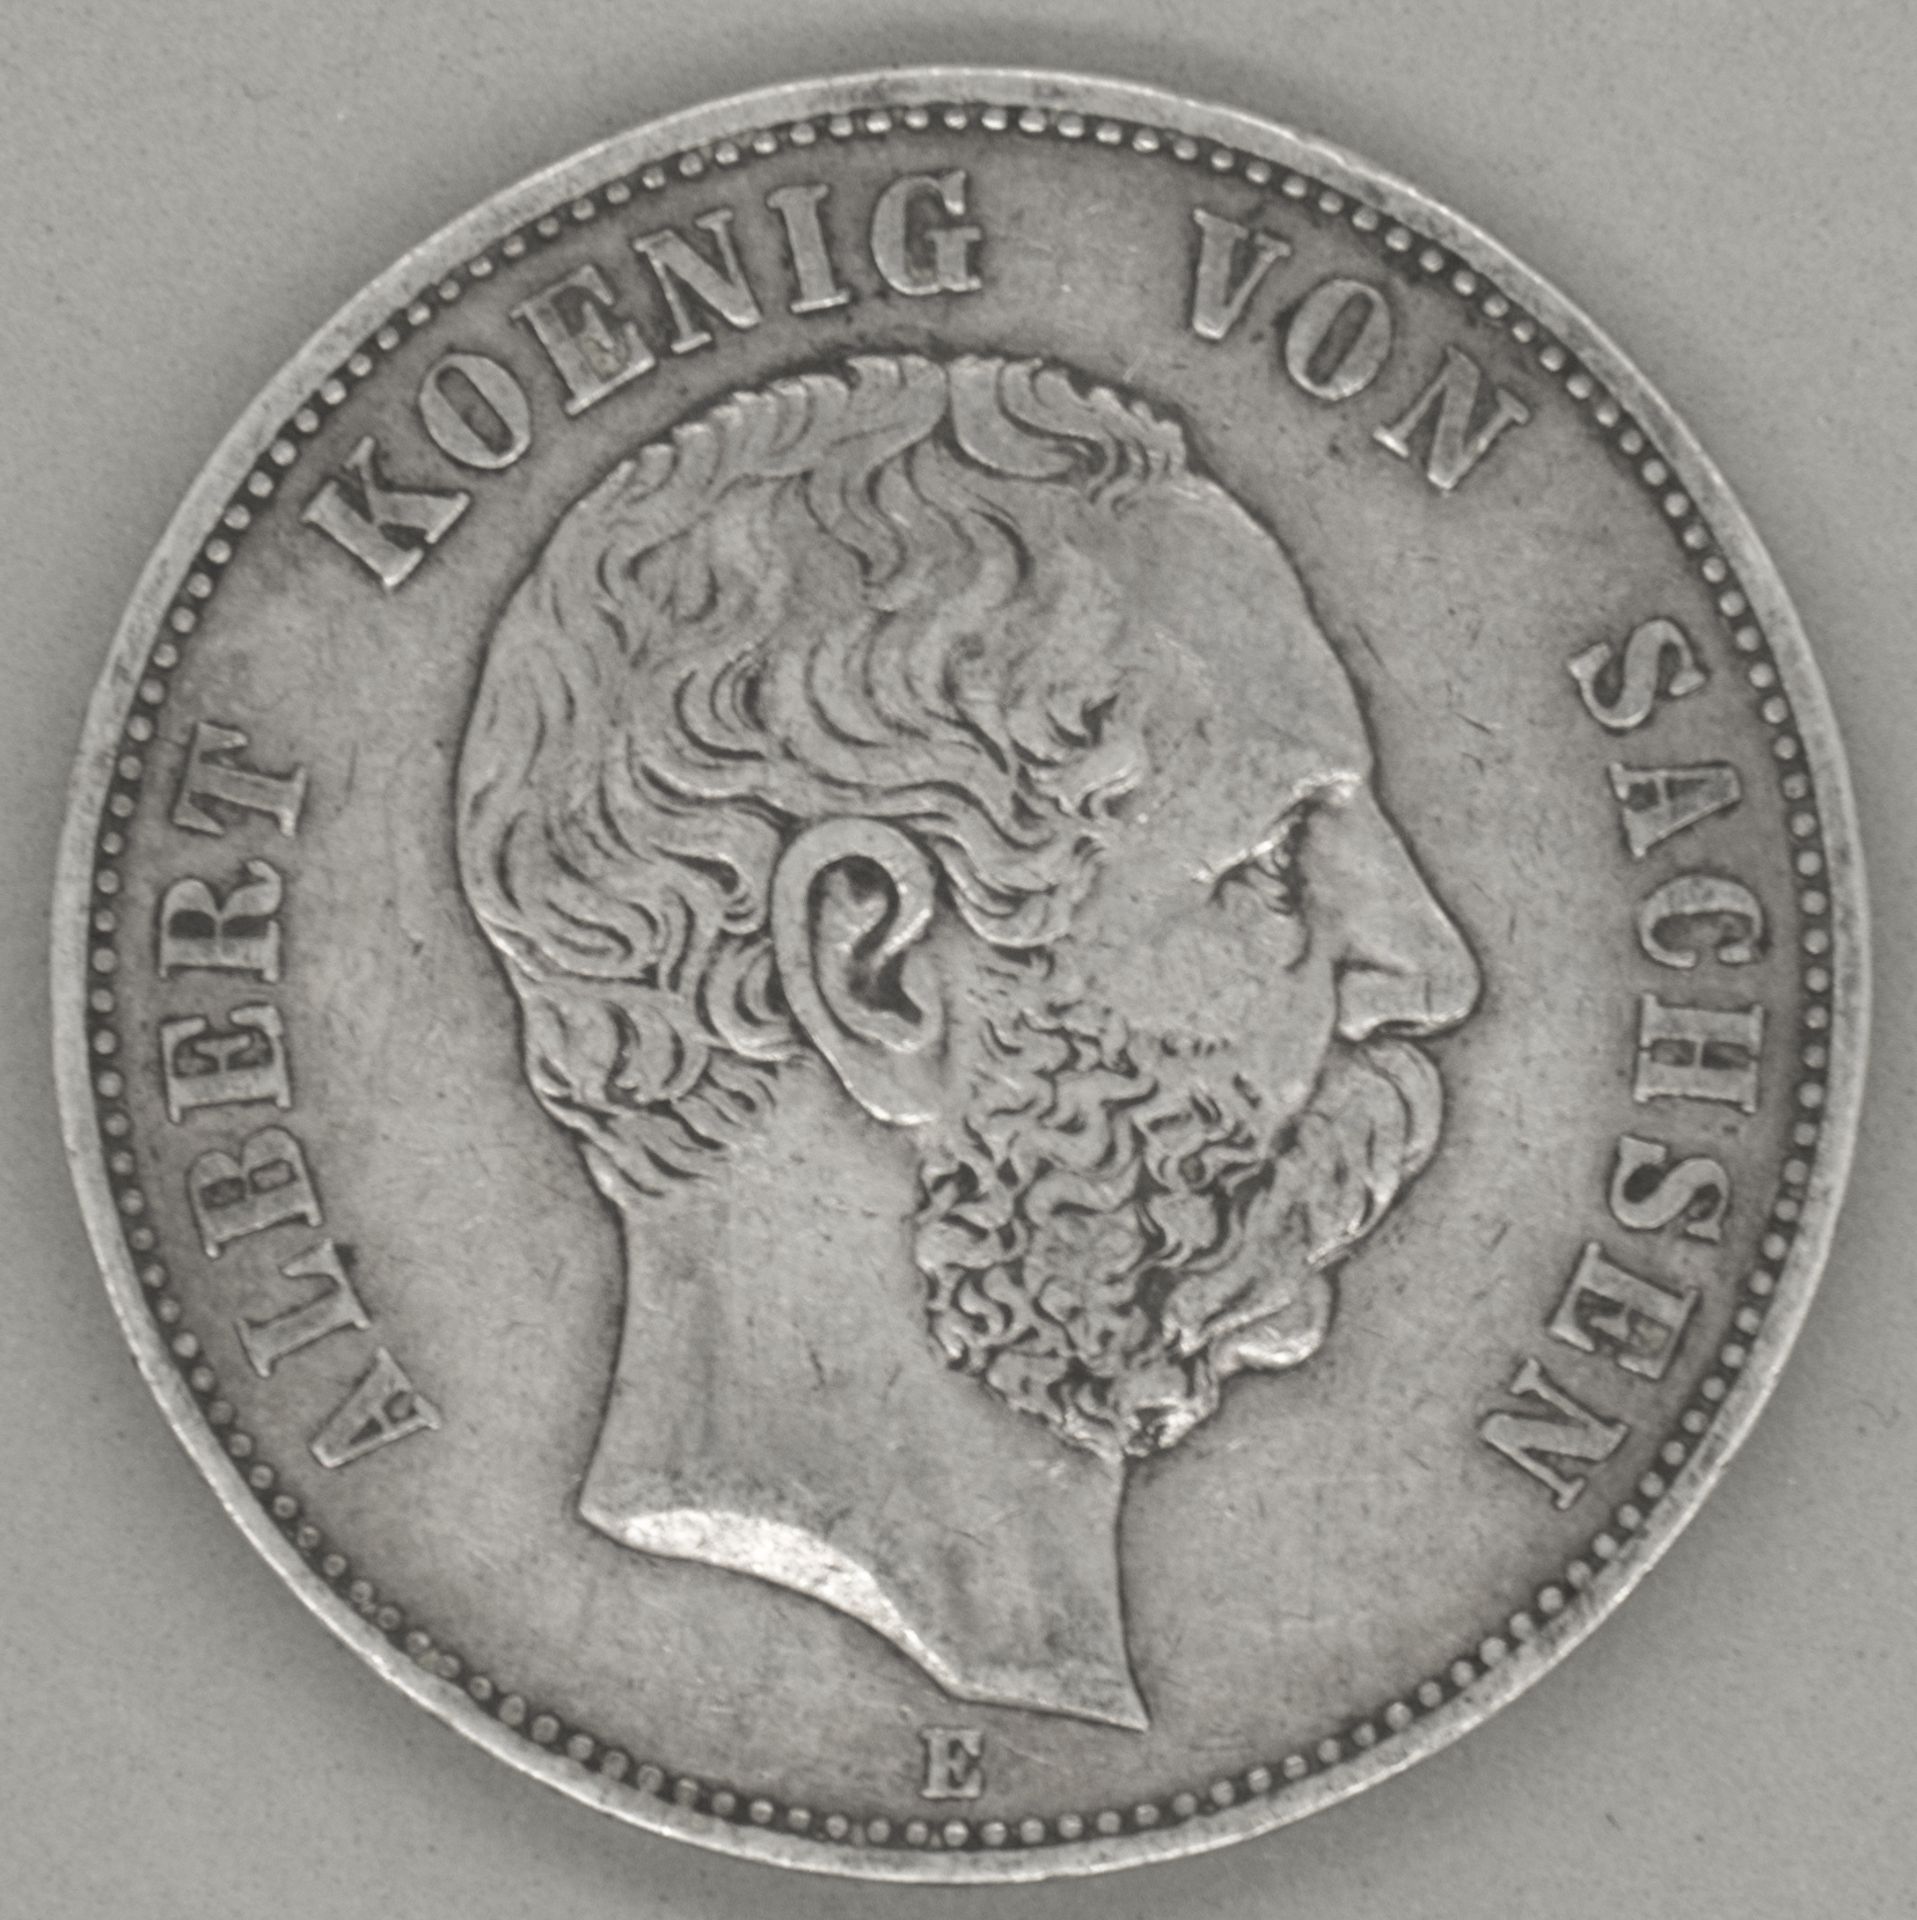 Deutsches Kaiserreich Sachsen 1875 E, 5.- Mark - Silbermünze "Albert Koenig von Sachsen." Jaeger